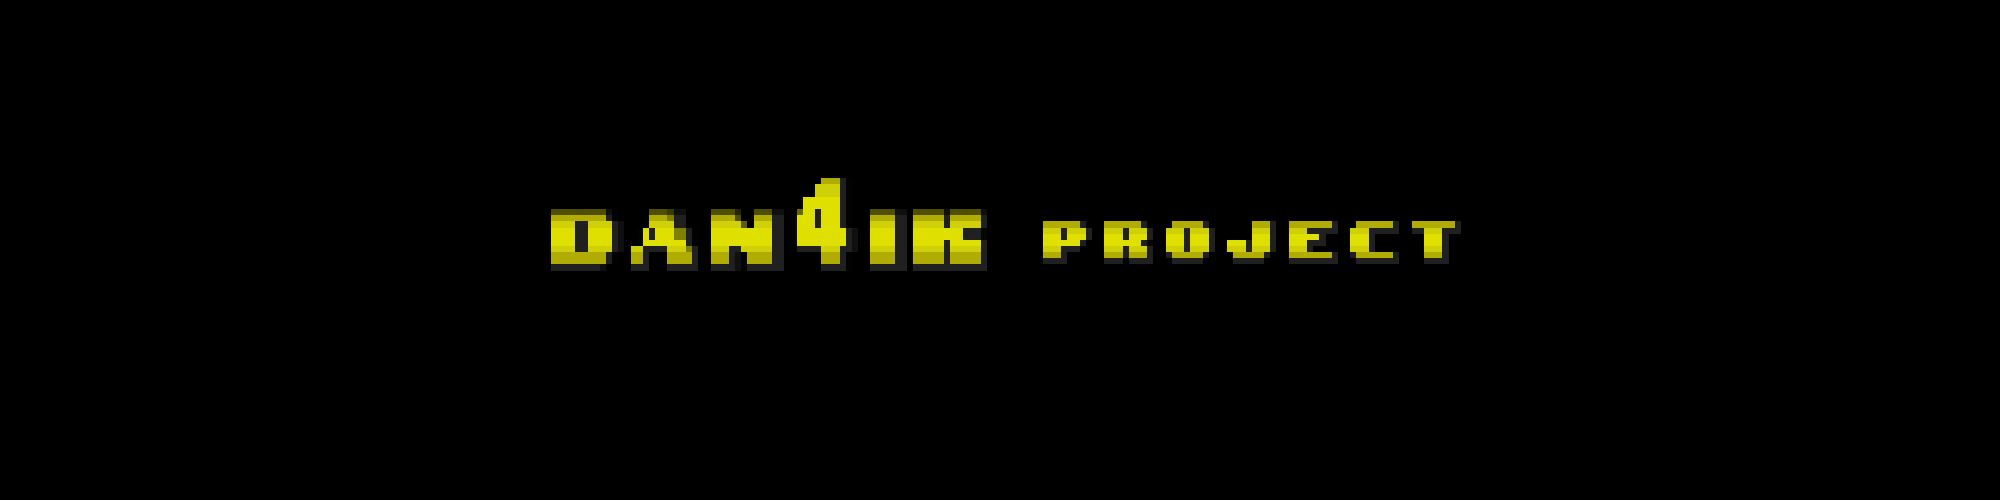 Sonic The Hedgehog: Dan4ik Project - Demo